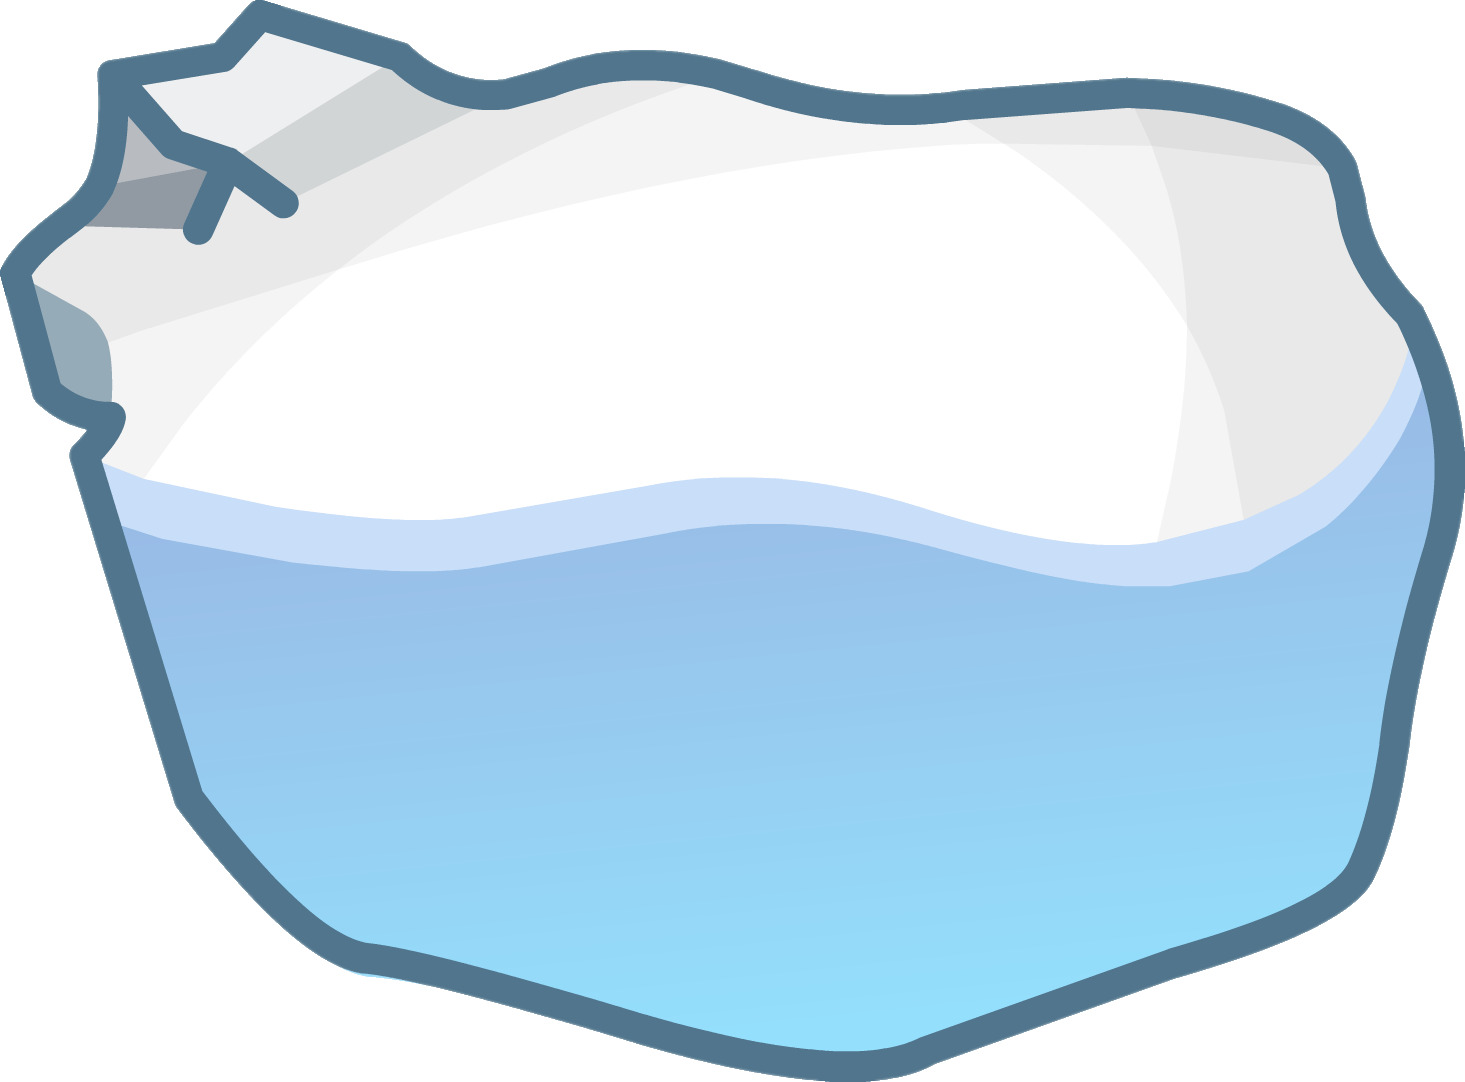 Iceberg icons